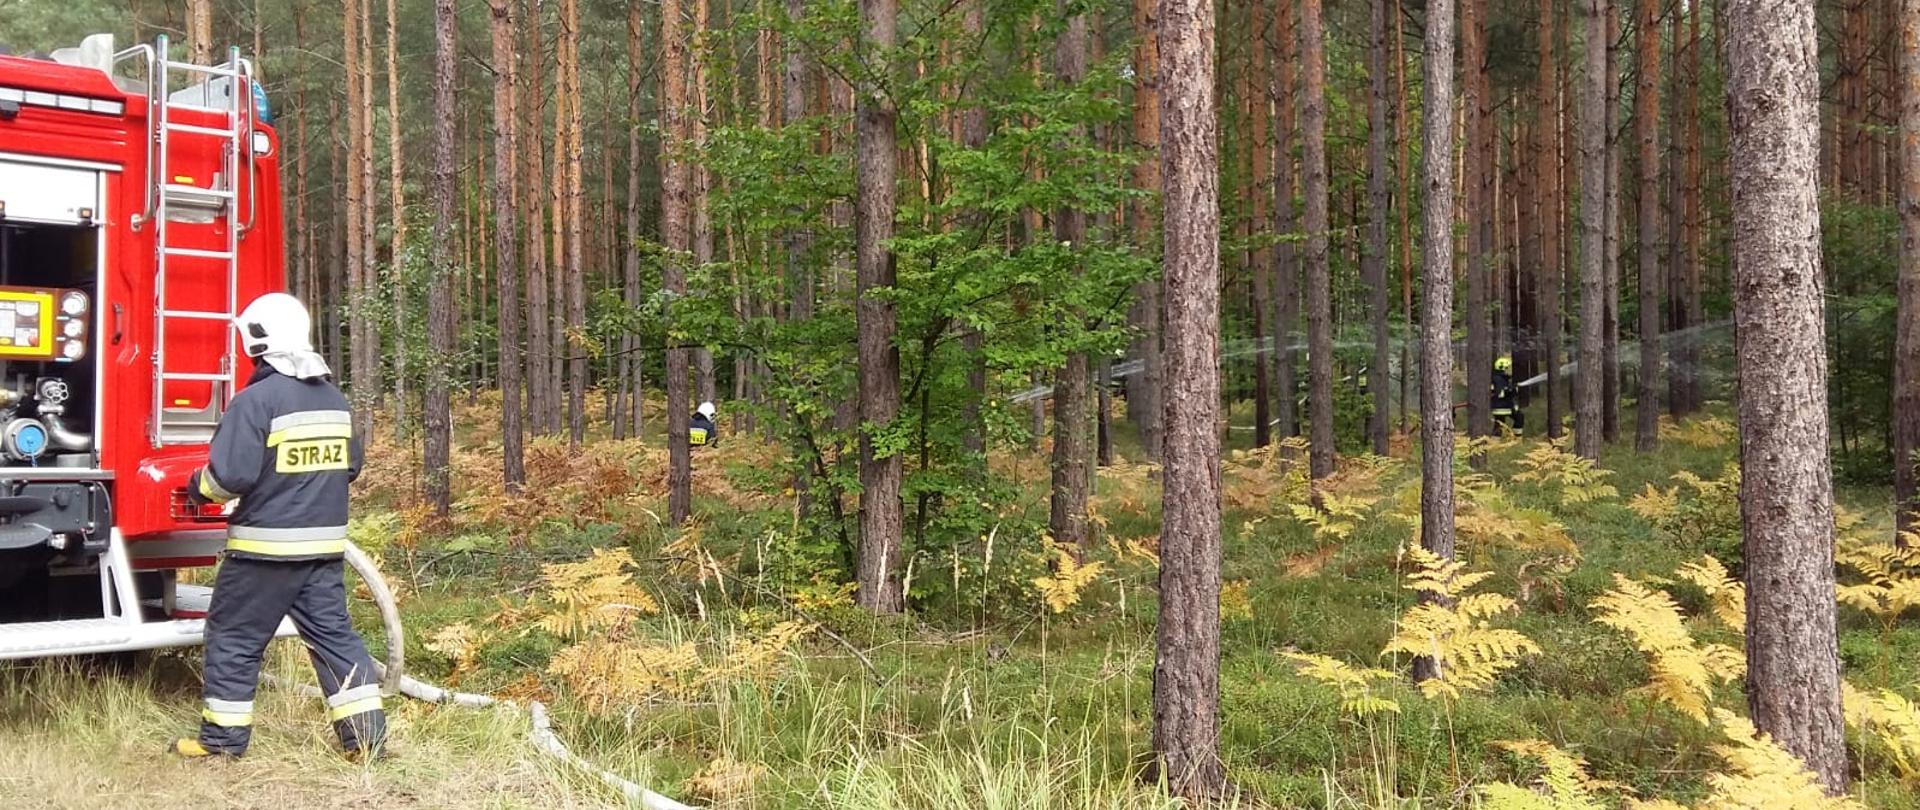 Zdjęcie zrobione w lesie, po lewej stronie tylna część samochodu strażackiego. W środkowej i prawej stronie pomiędzy drzewami strażacy z liniami gaśniczymi podają wodę w głąb lasu. Strażacy w umundurowaniu specjalnym w hełmach.